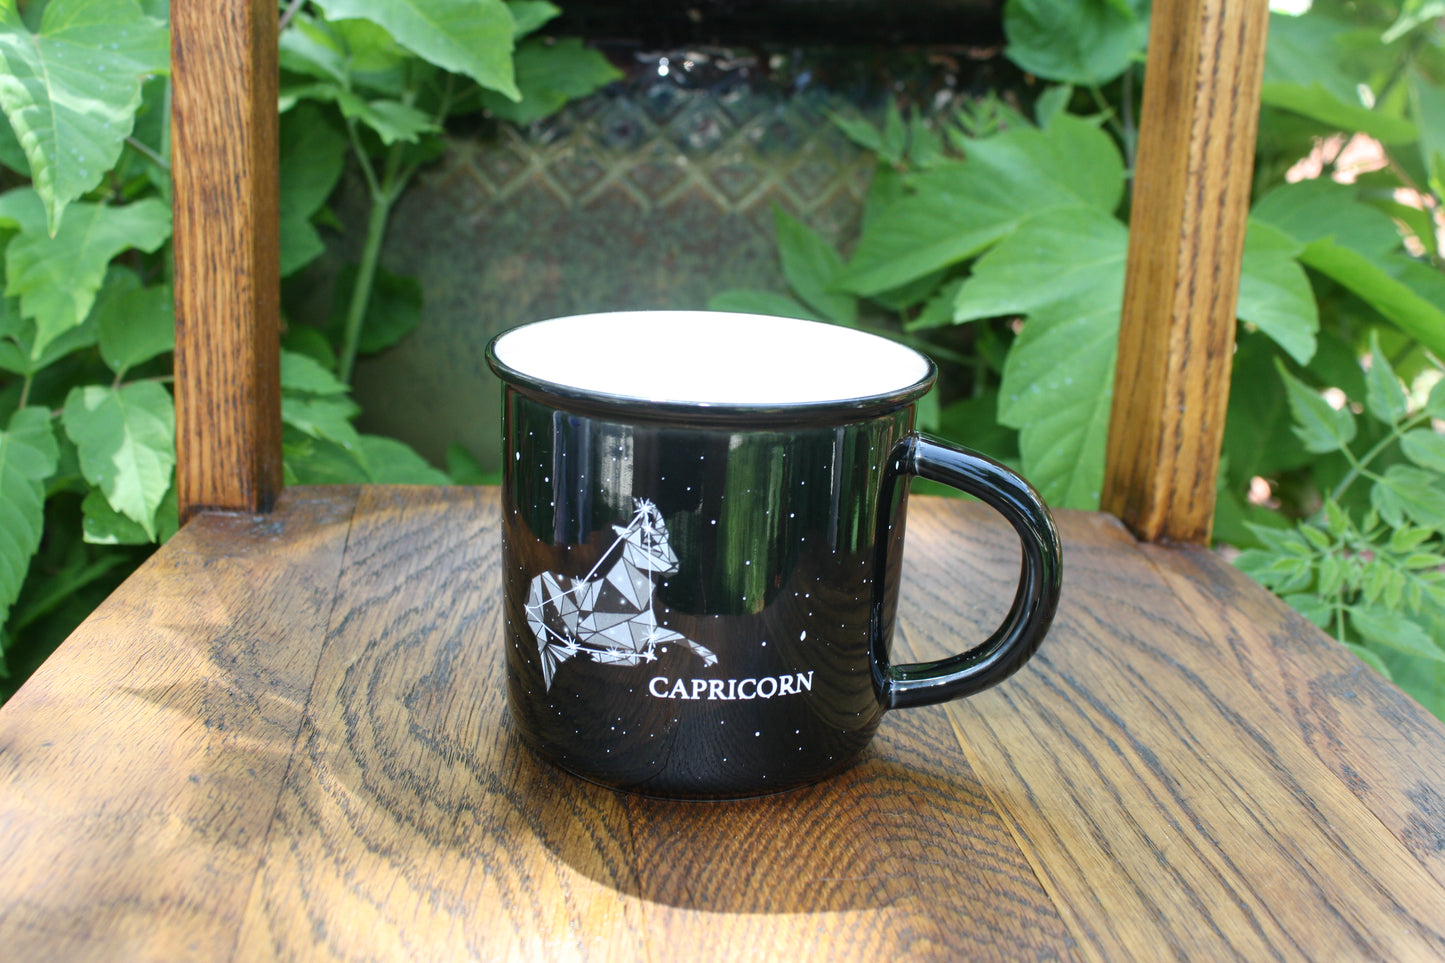 Capricorn mug